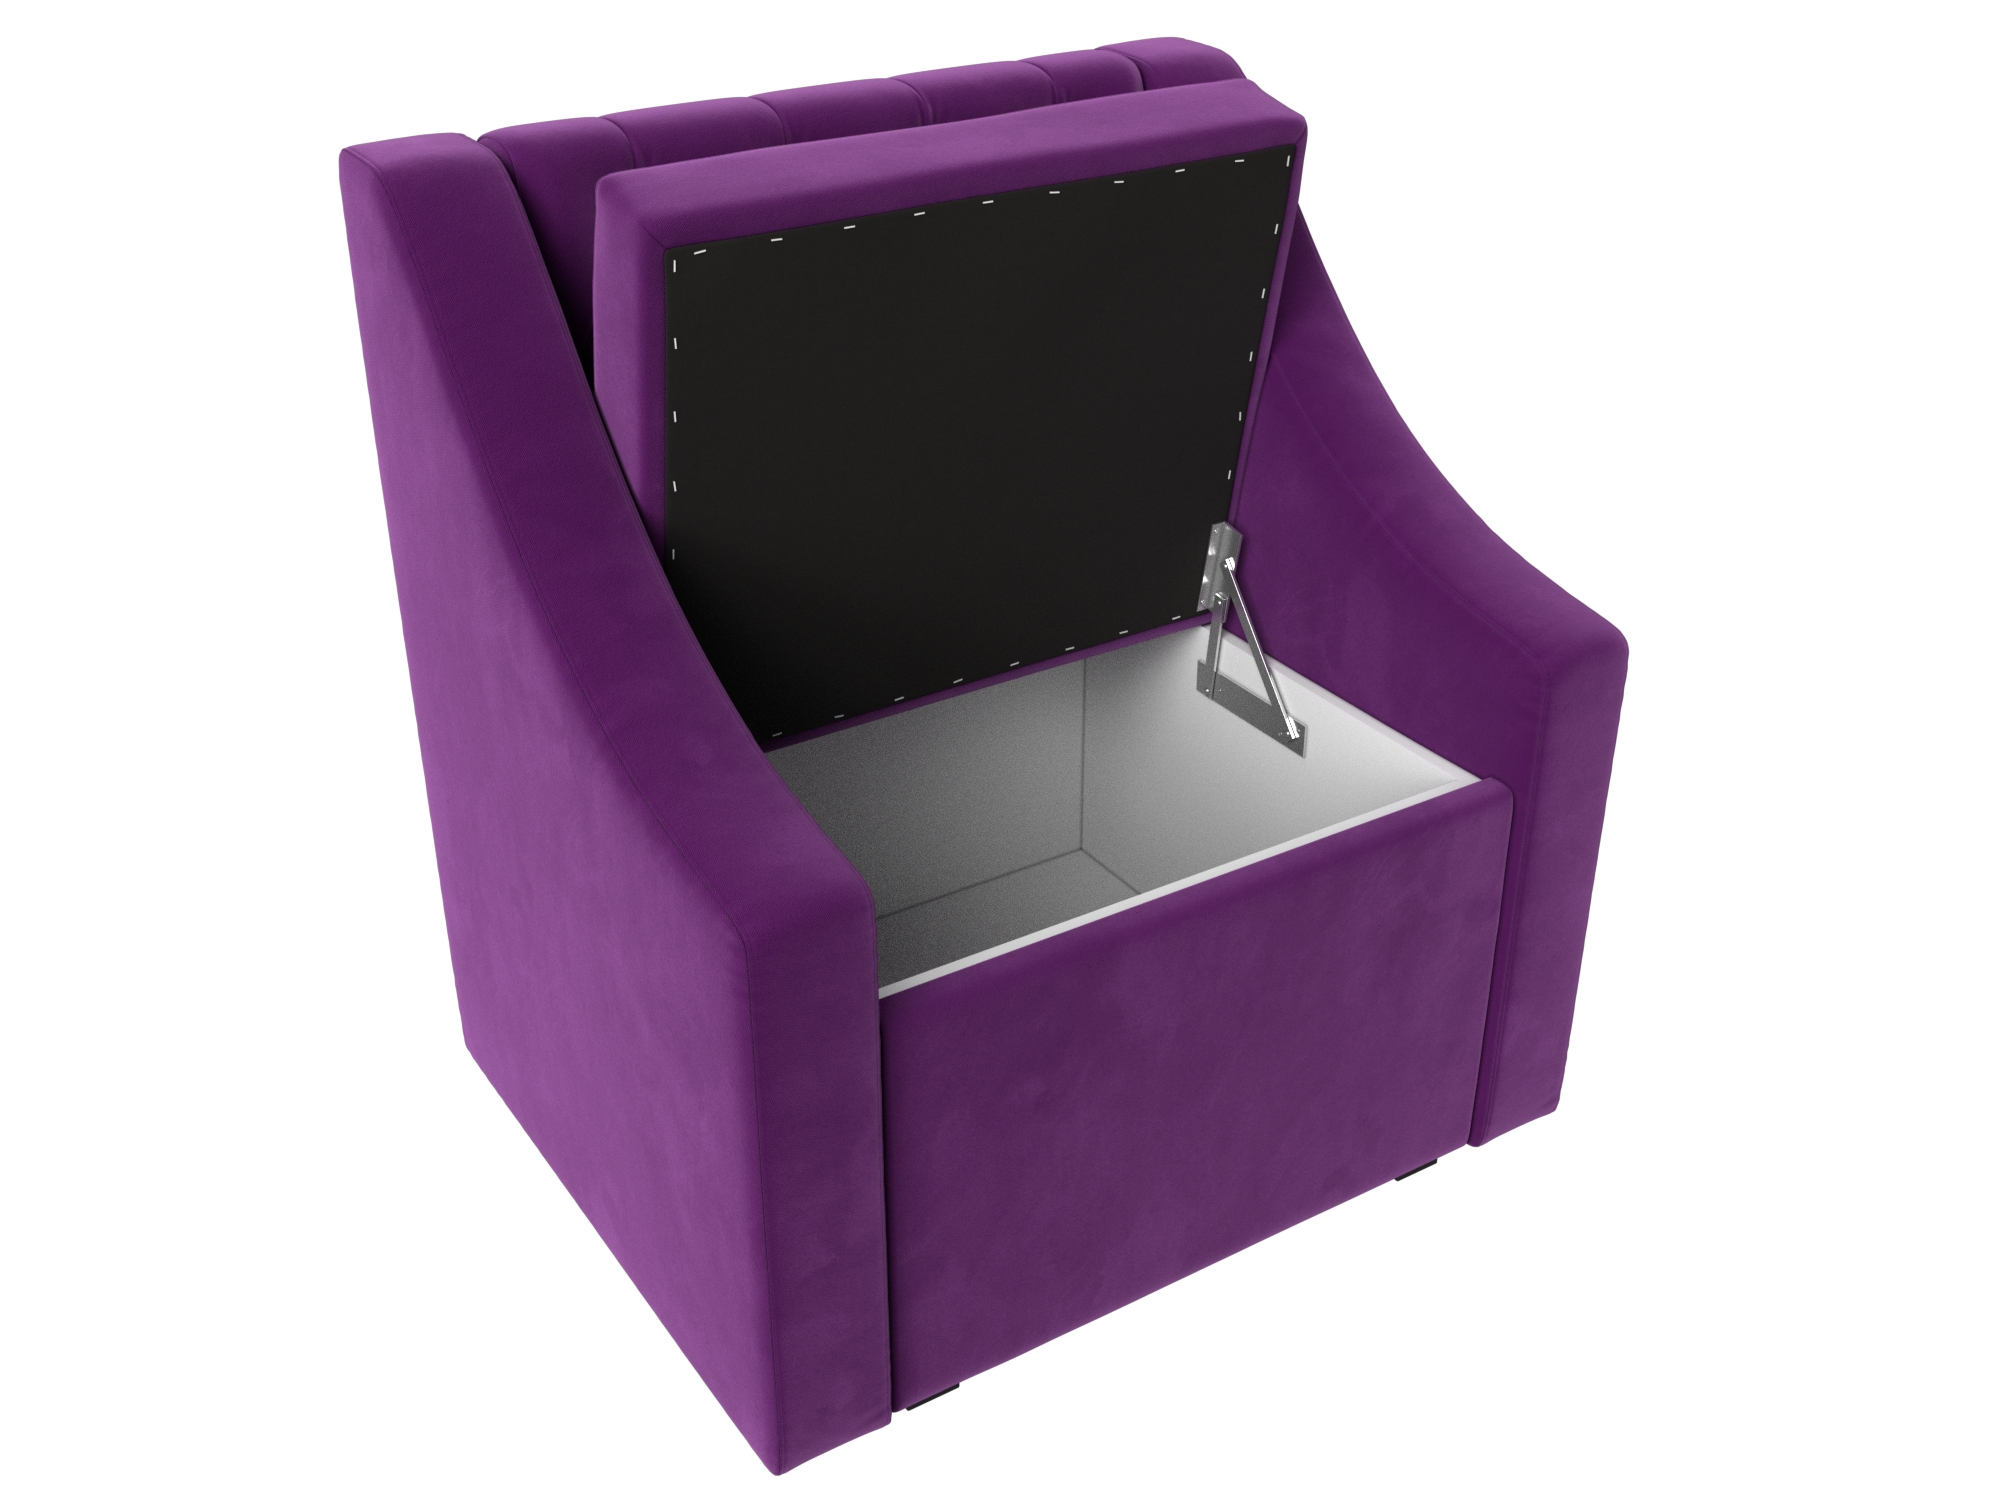 Кресло Мерлин (Фиолетовый)